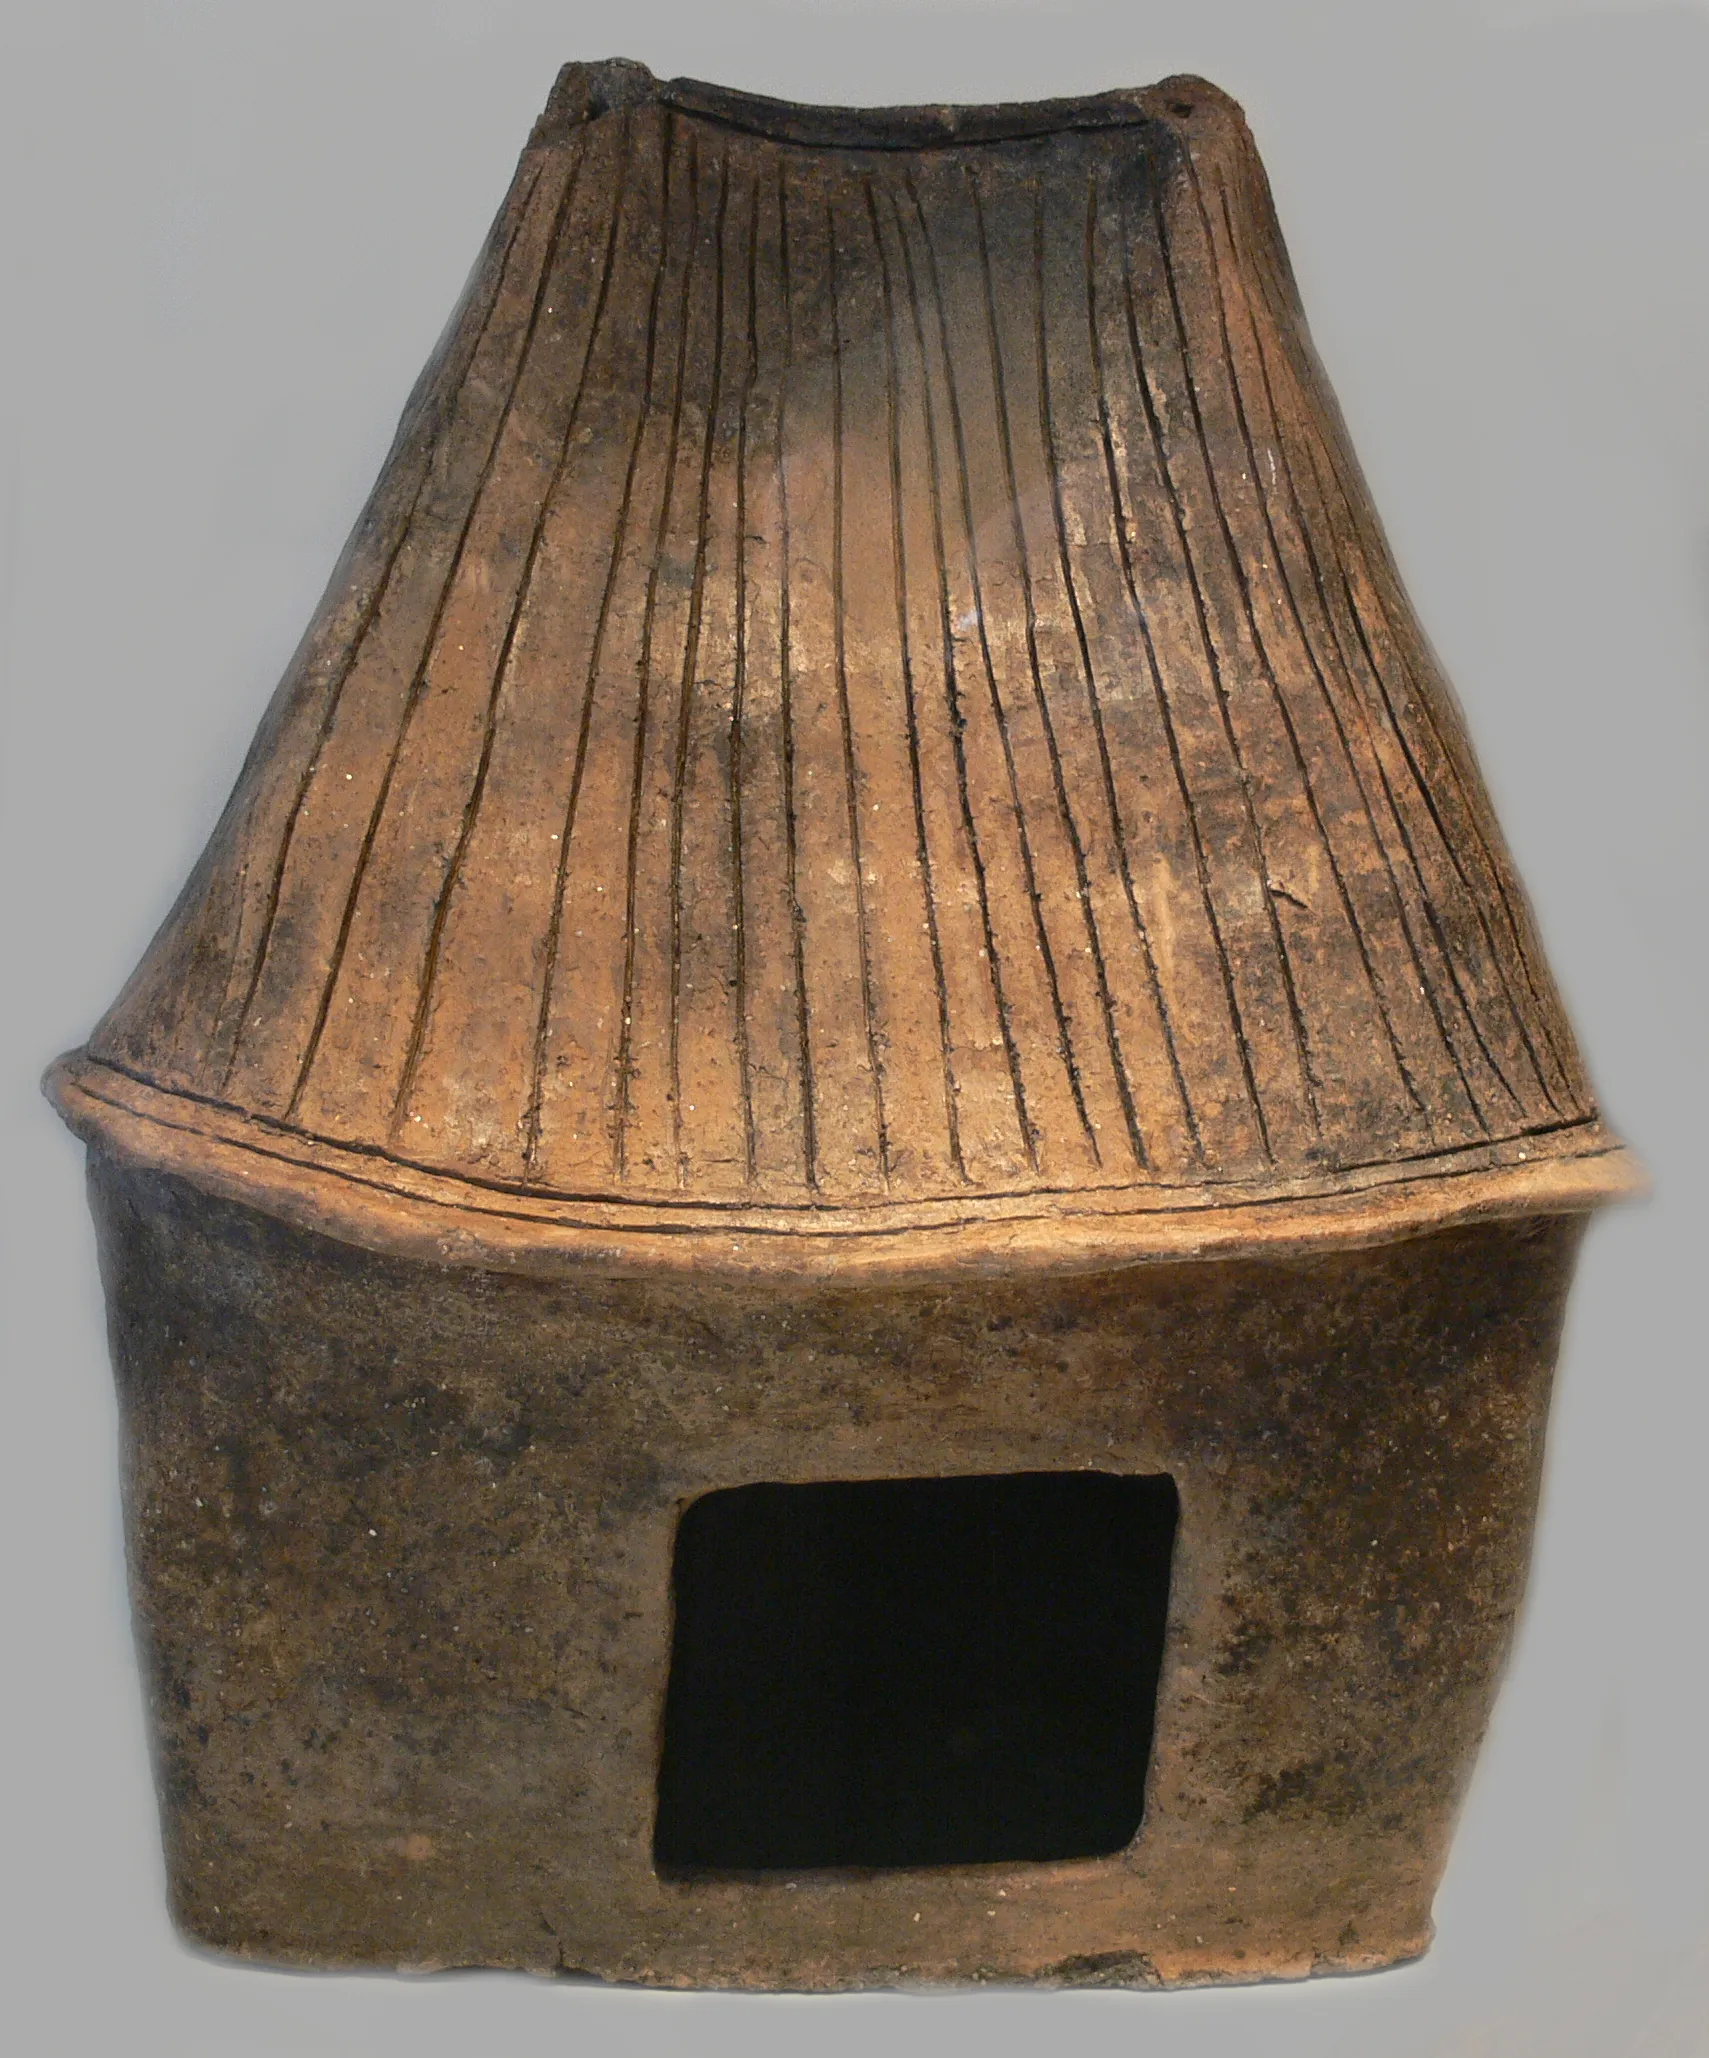 Photo showing: Hausurne mit Firstdach, Keramik; 7. Jh. v. Chr.; Neu Königsaue, Sachsen-Anhalt

Collection: Museum für Vor- und Frühgeschichte Berlin